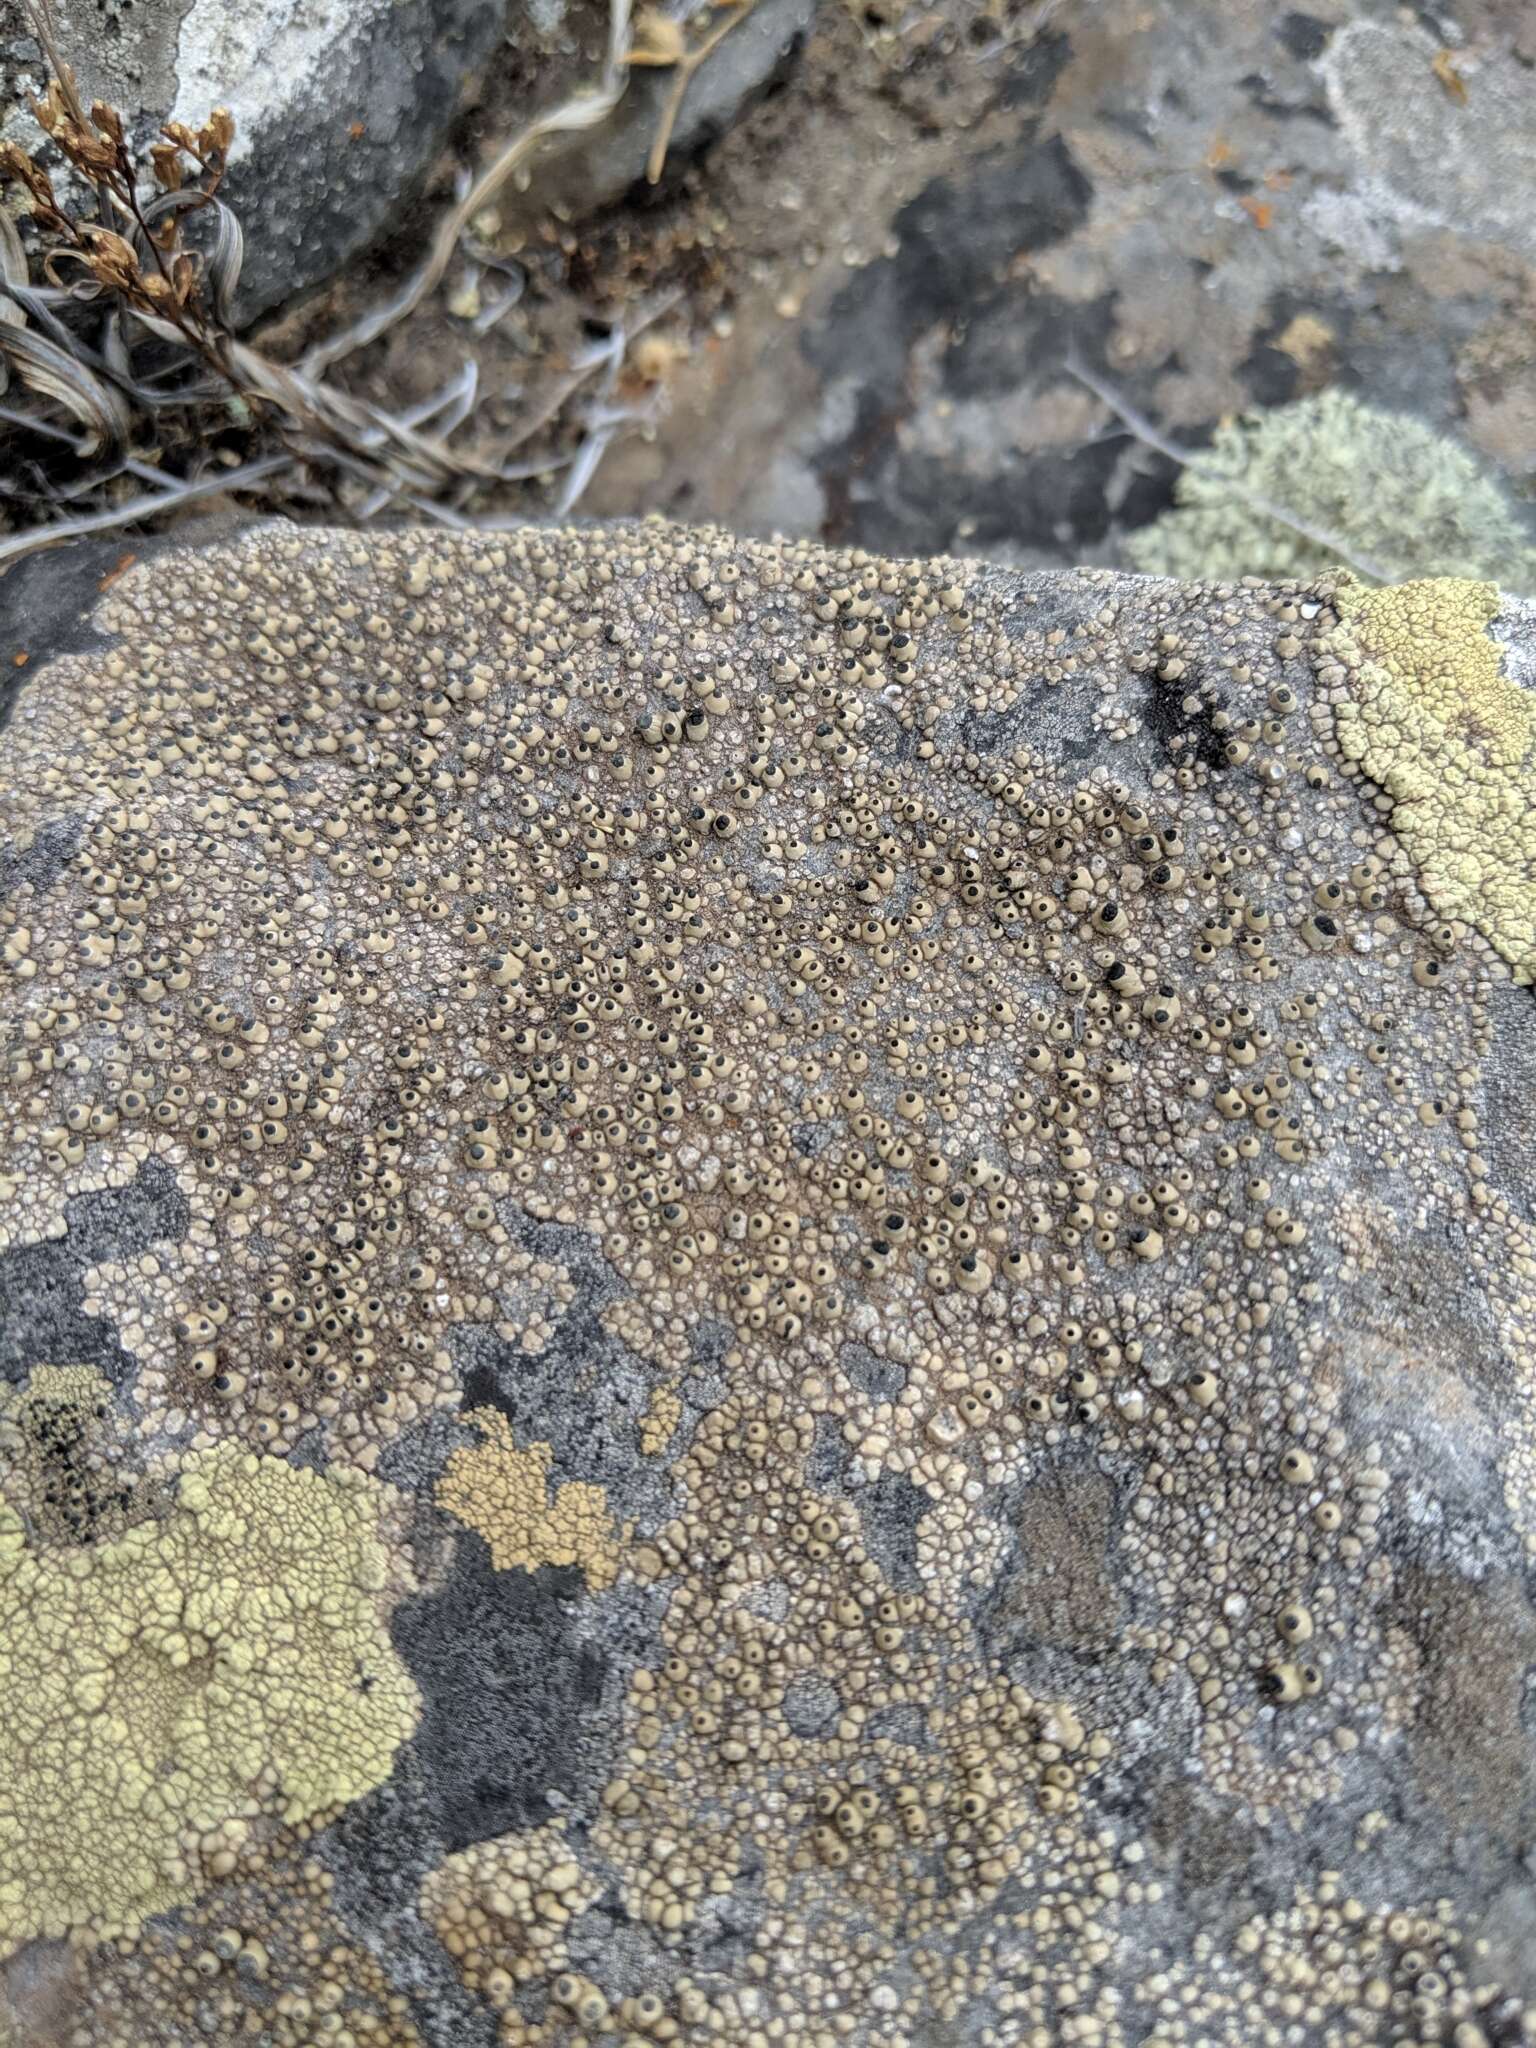 Image of Santesson's thelomma lichen